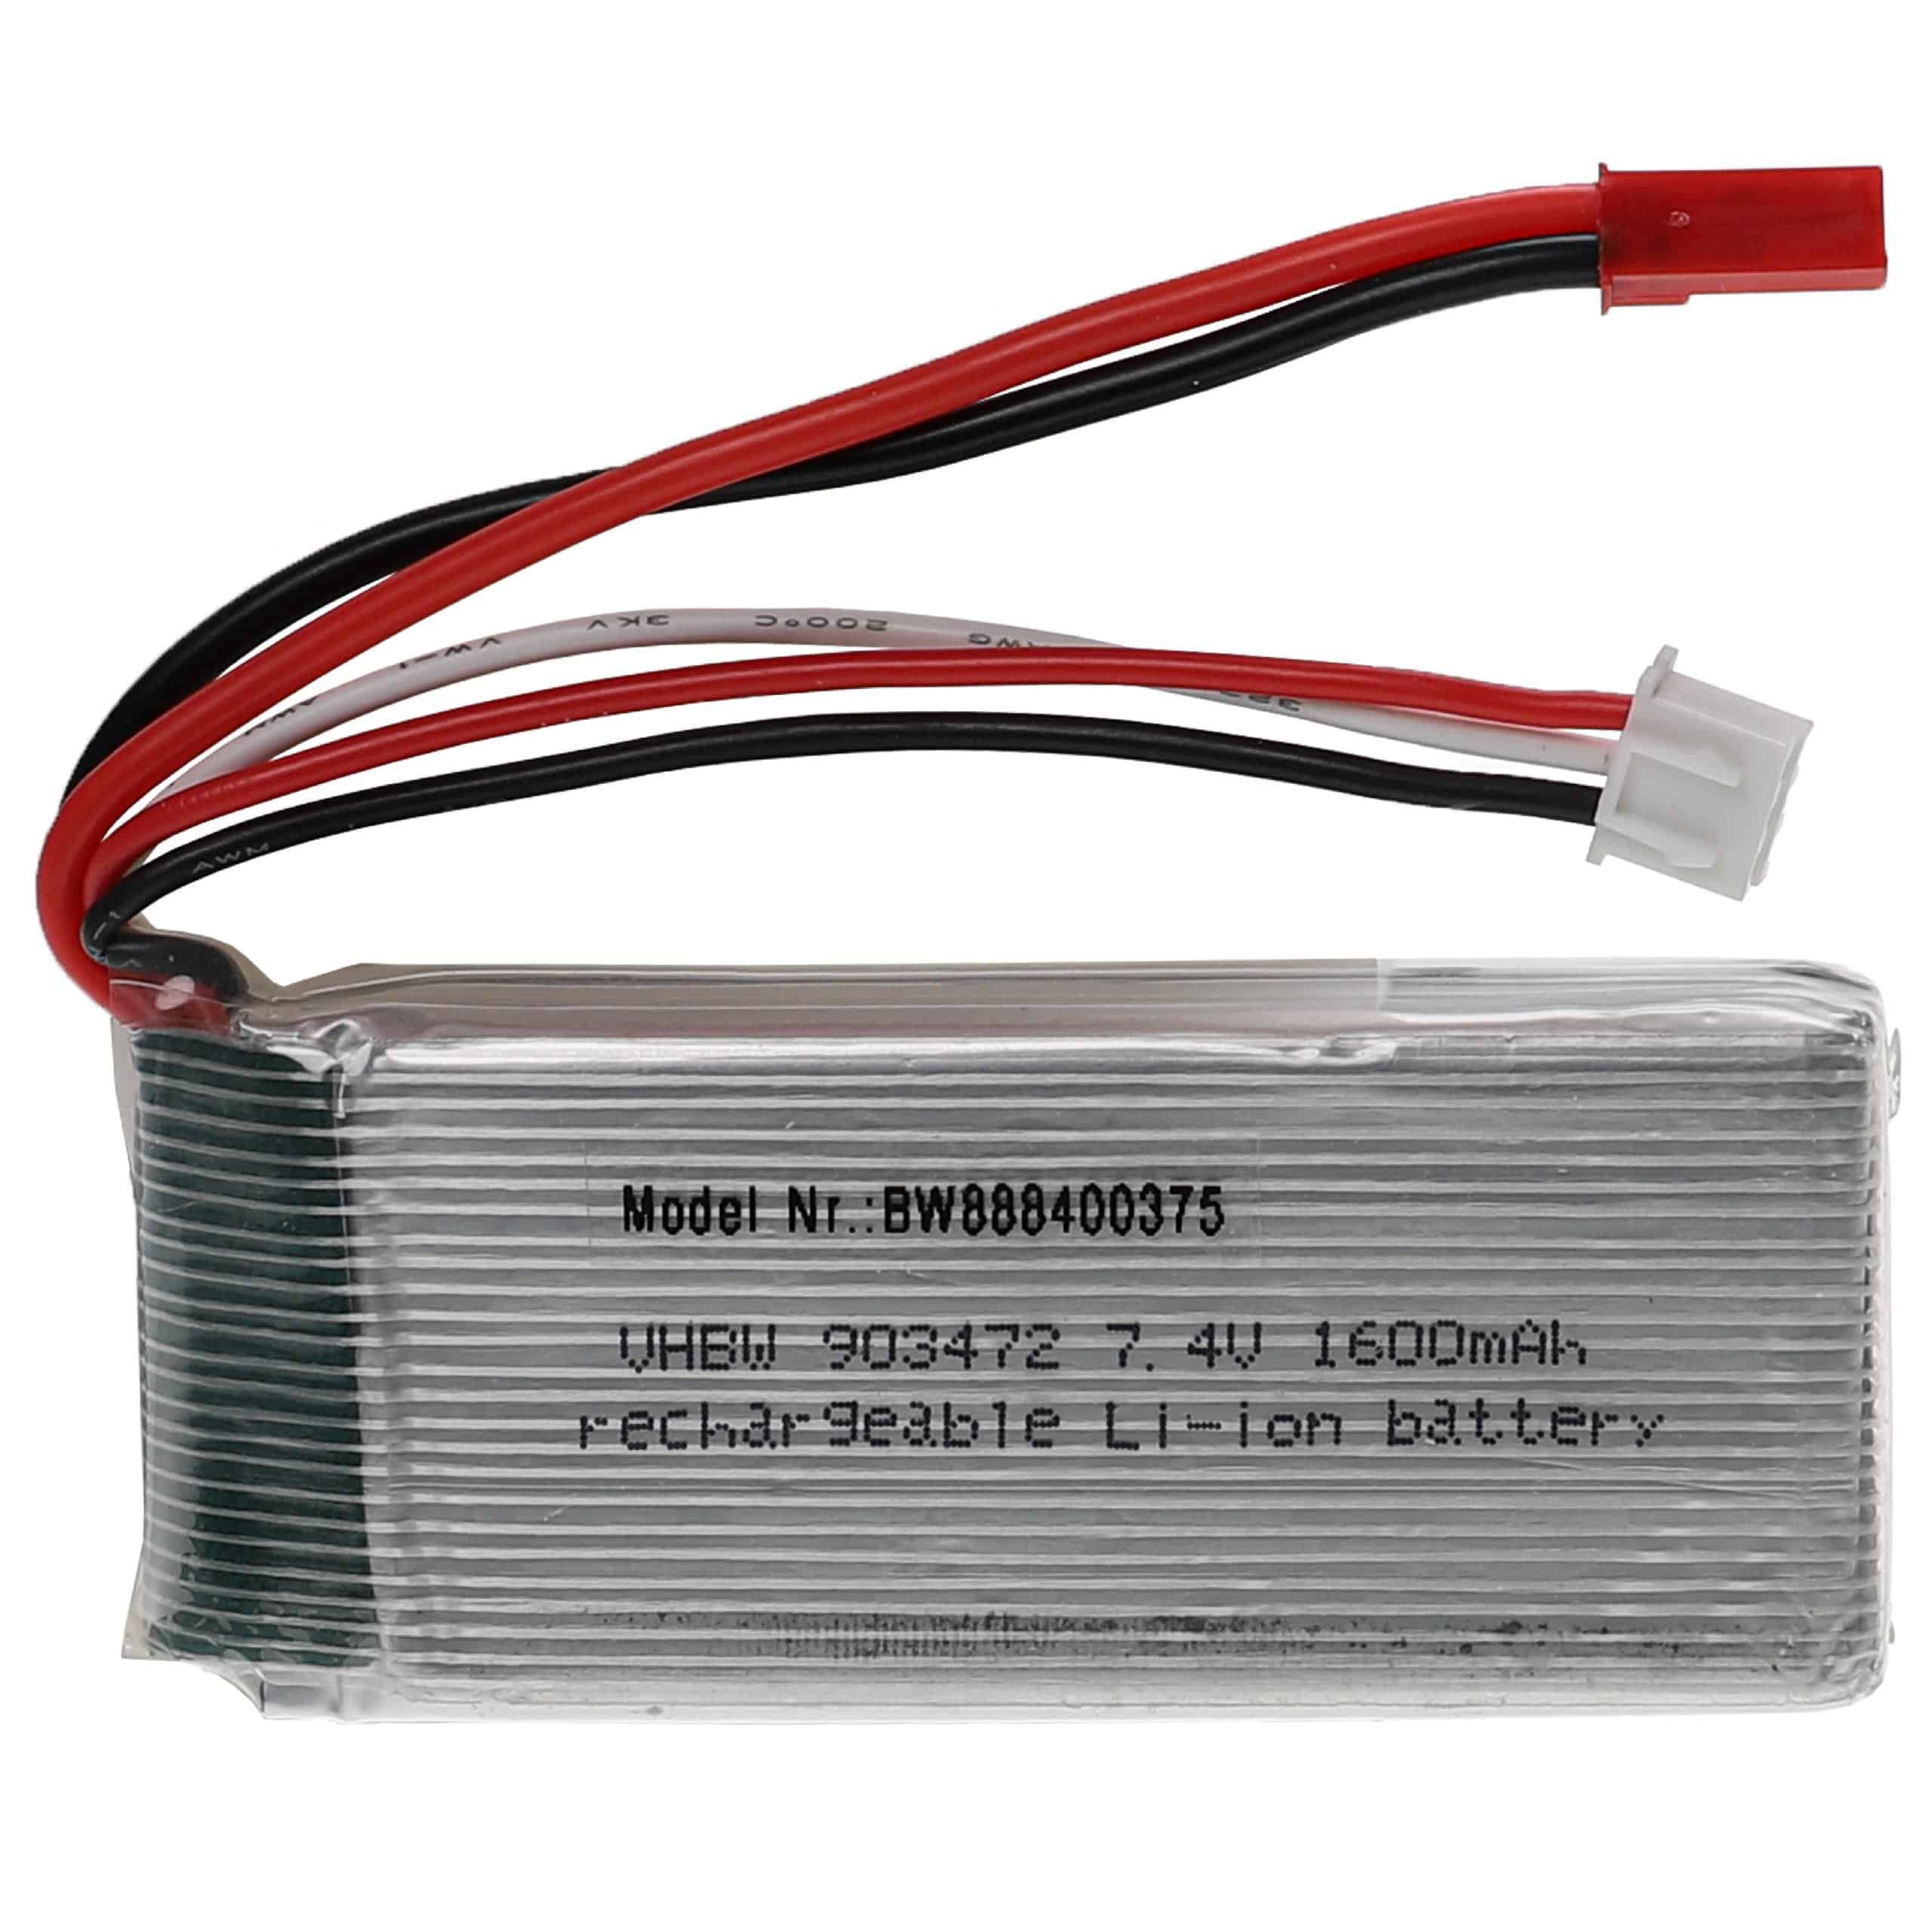 Batterie pour modèle radio-télécommandé - 1600mAh 7,4V Li-polymère, BEC